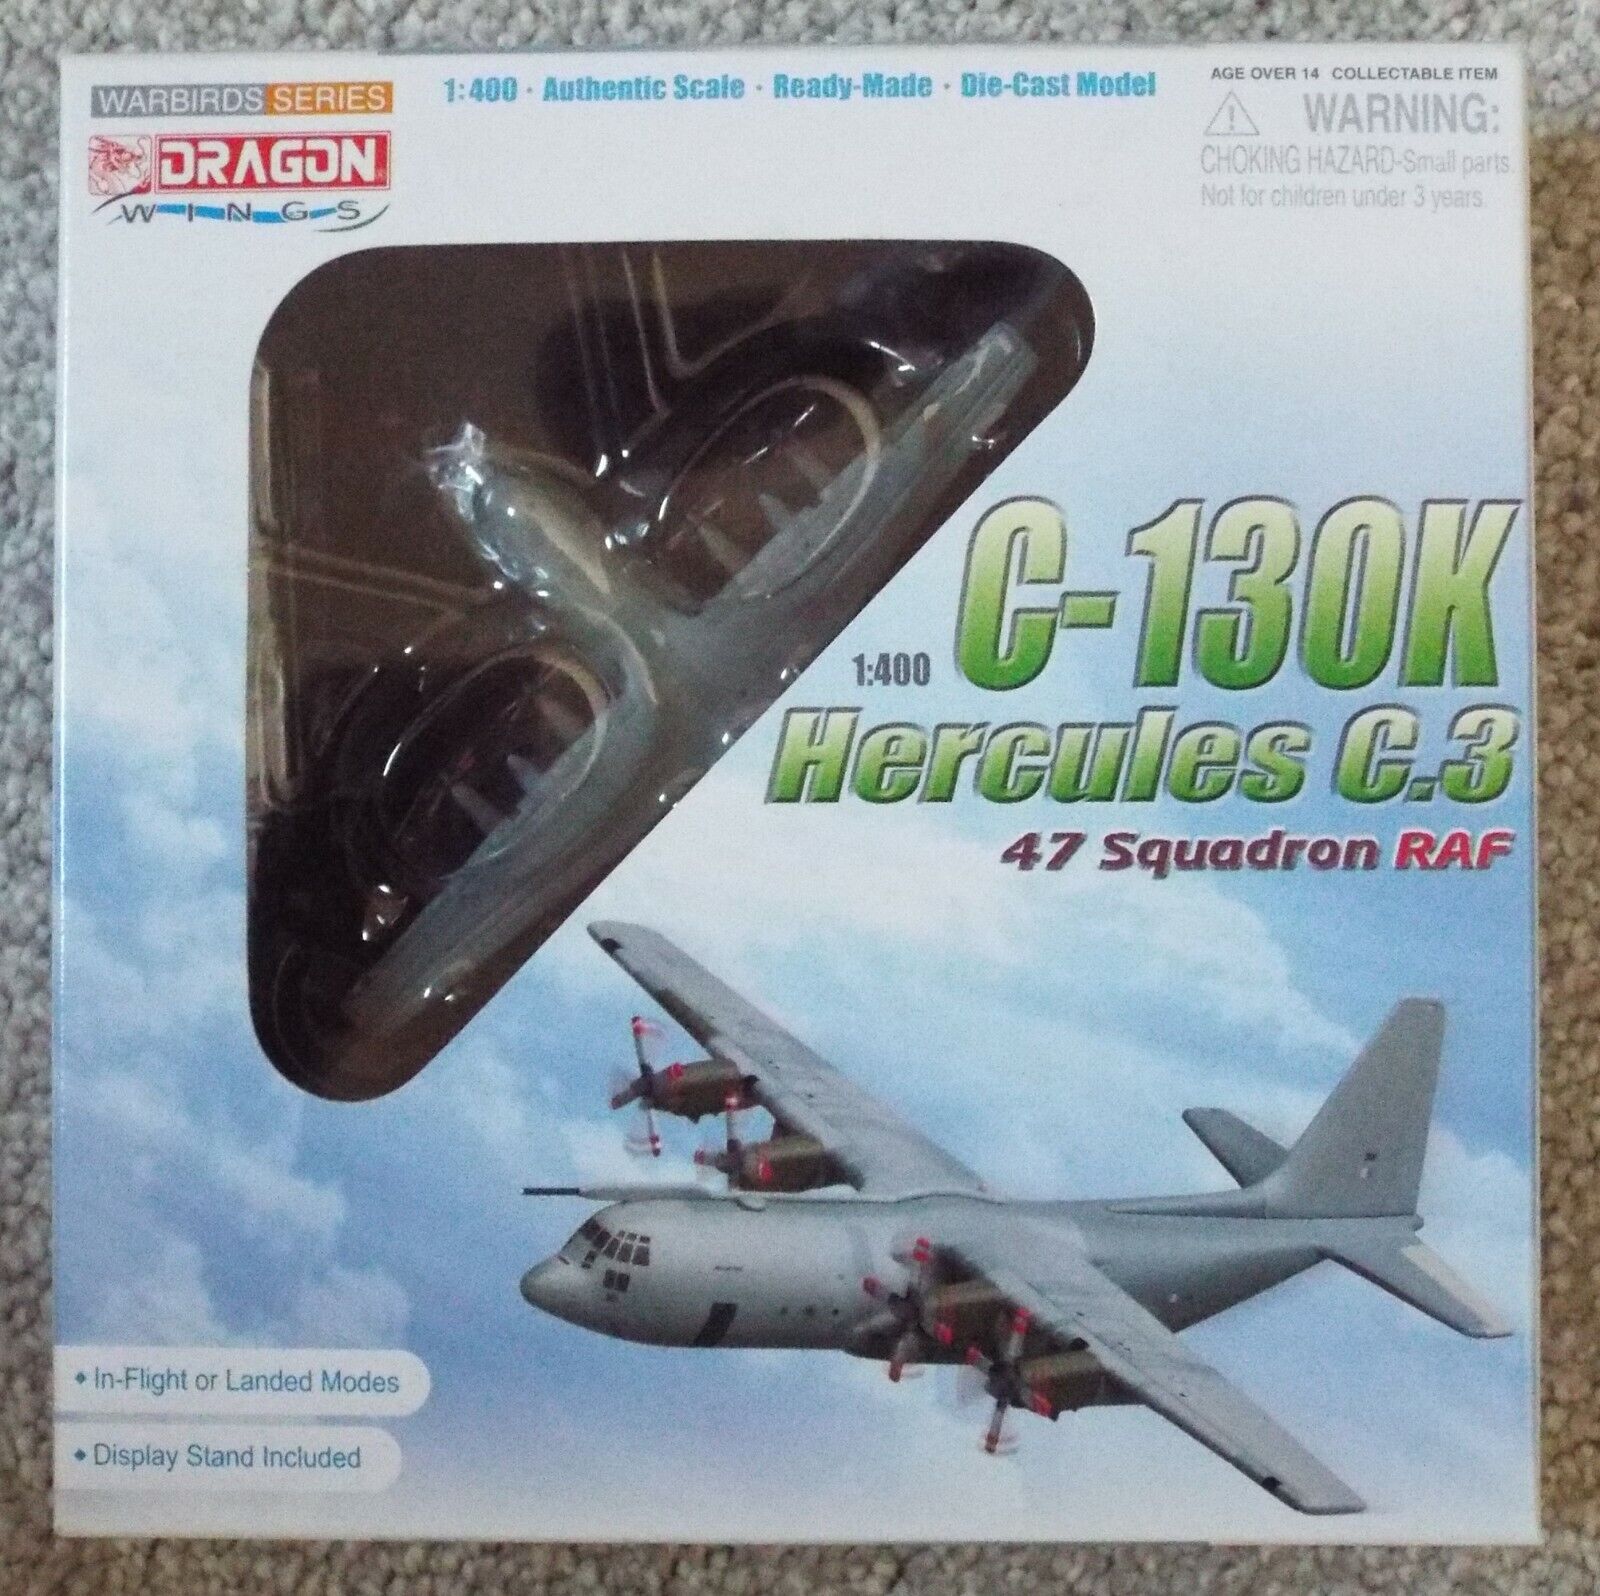 1/400 Diecast C-130K Hercules C.3 RAF Dragon Wings #56279 Factory Sealed MISB